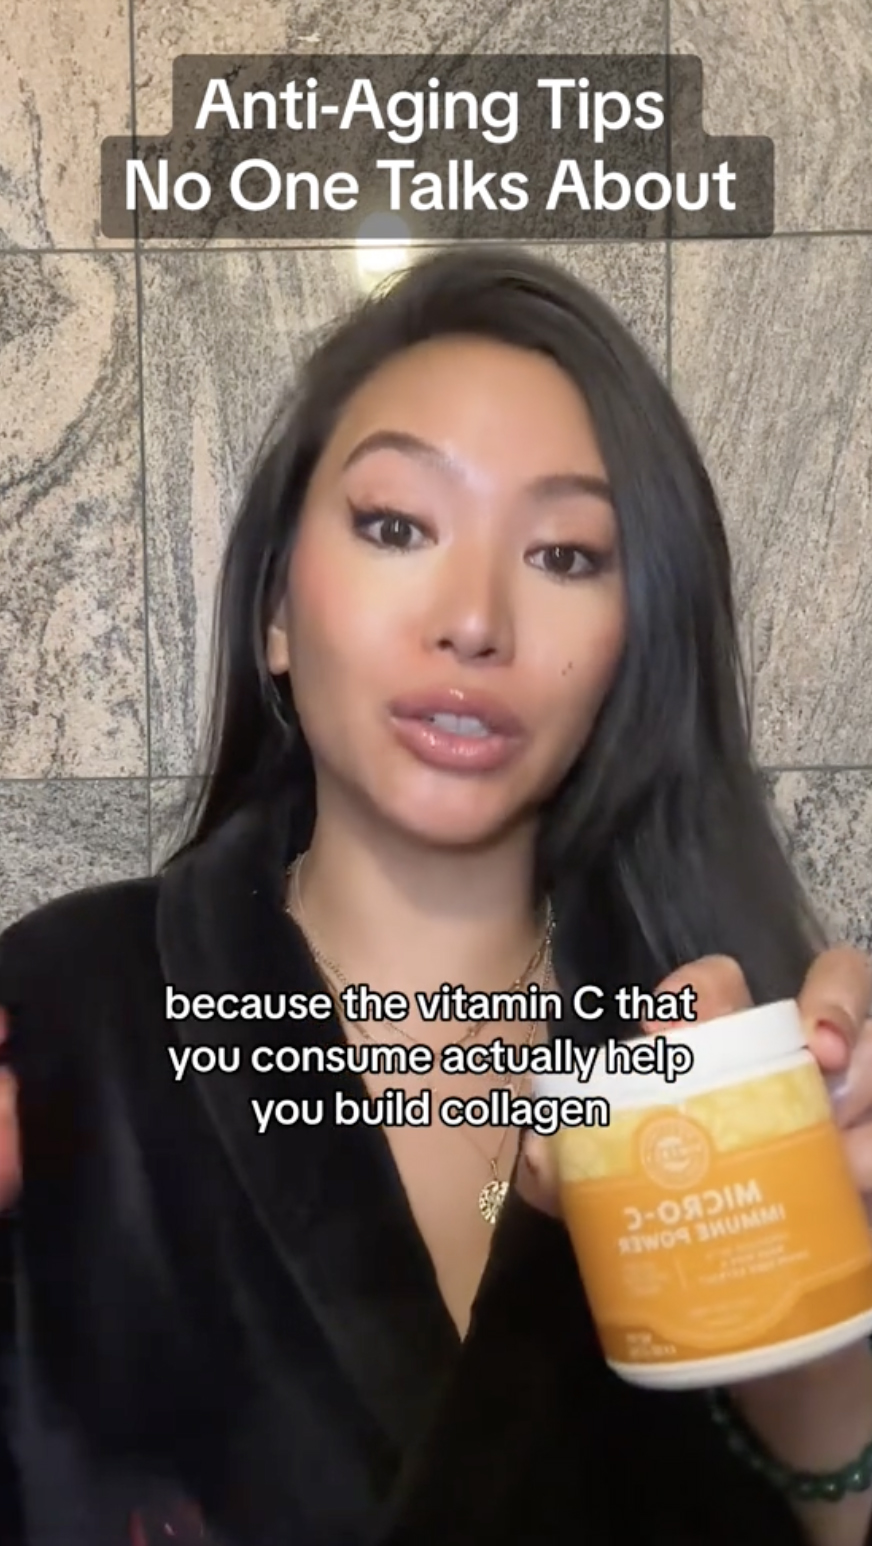 Anstelle von Botox entschied sie sich für "essen" ihre Hautpflege durch den Verzehr von Vitamin C